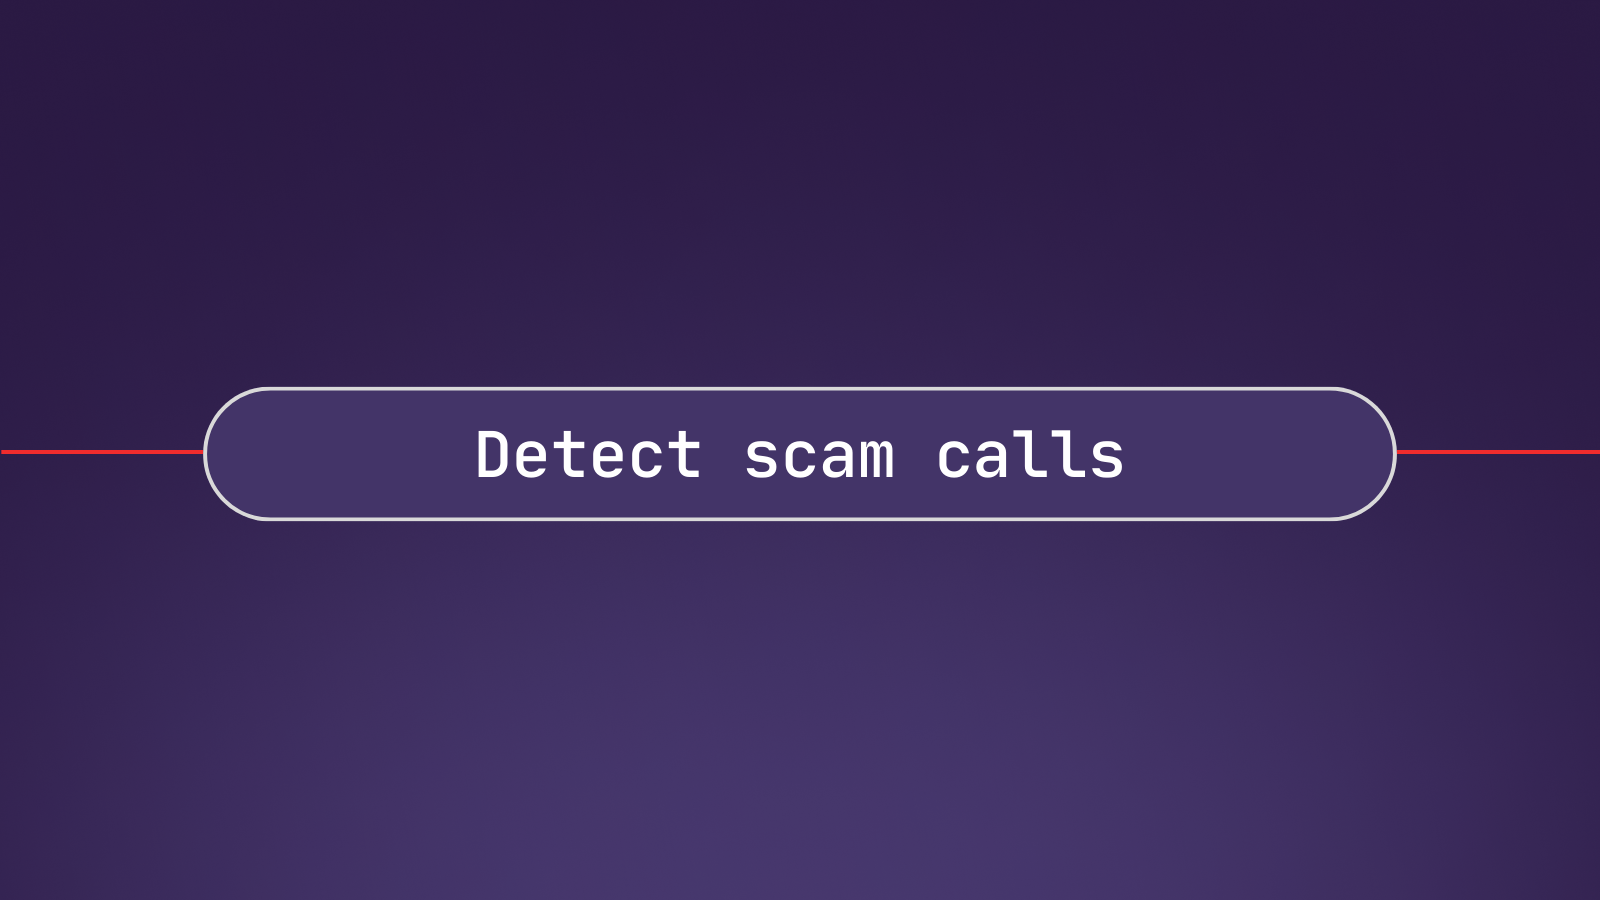 Detect scam calls using Go with LeMUR and Twilio